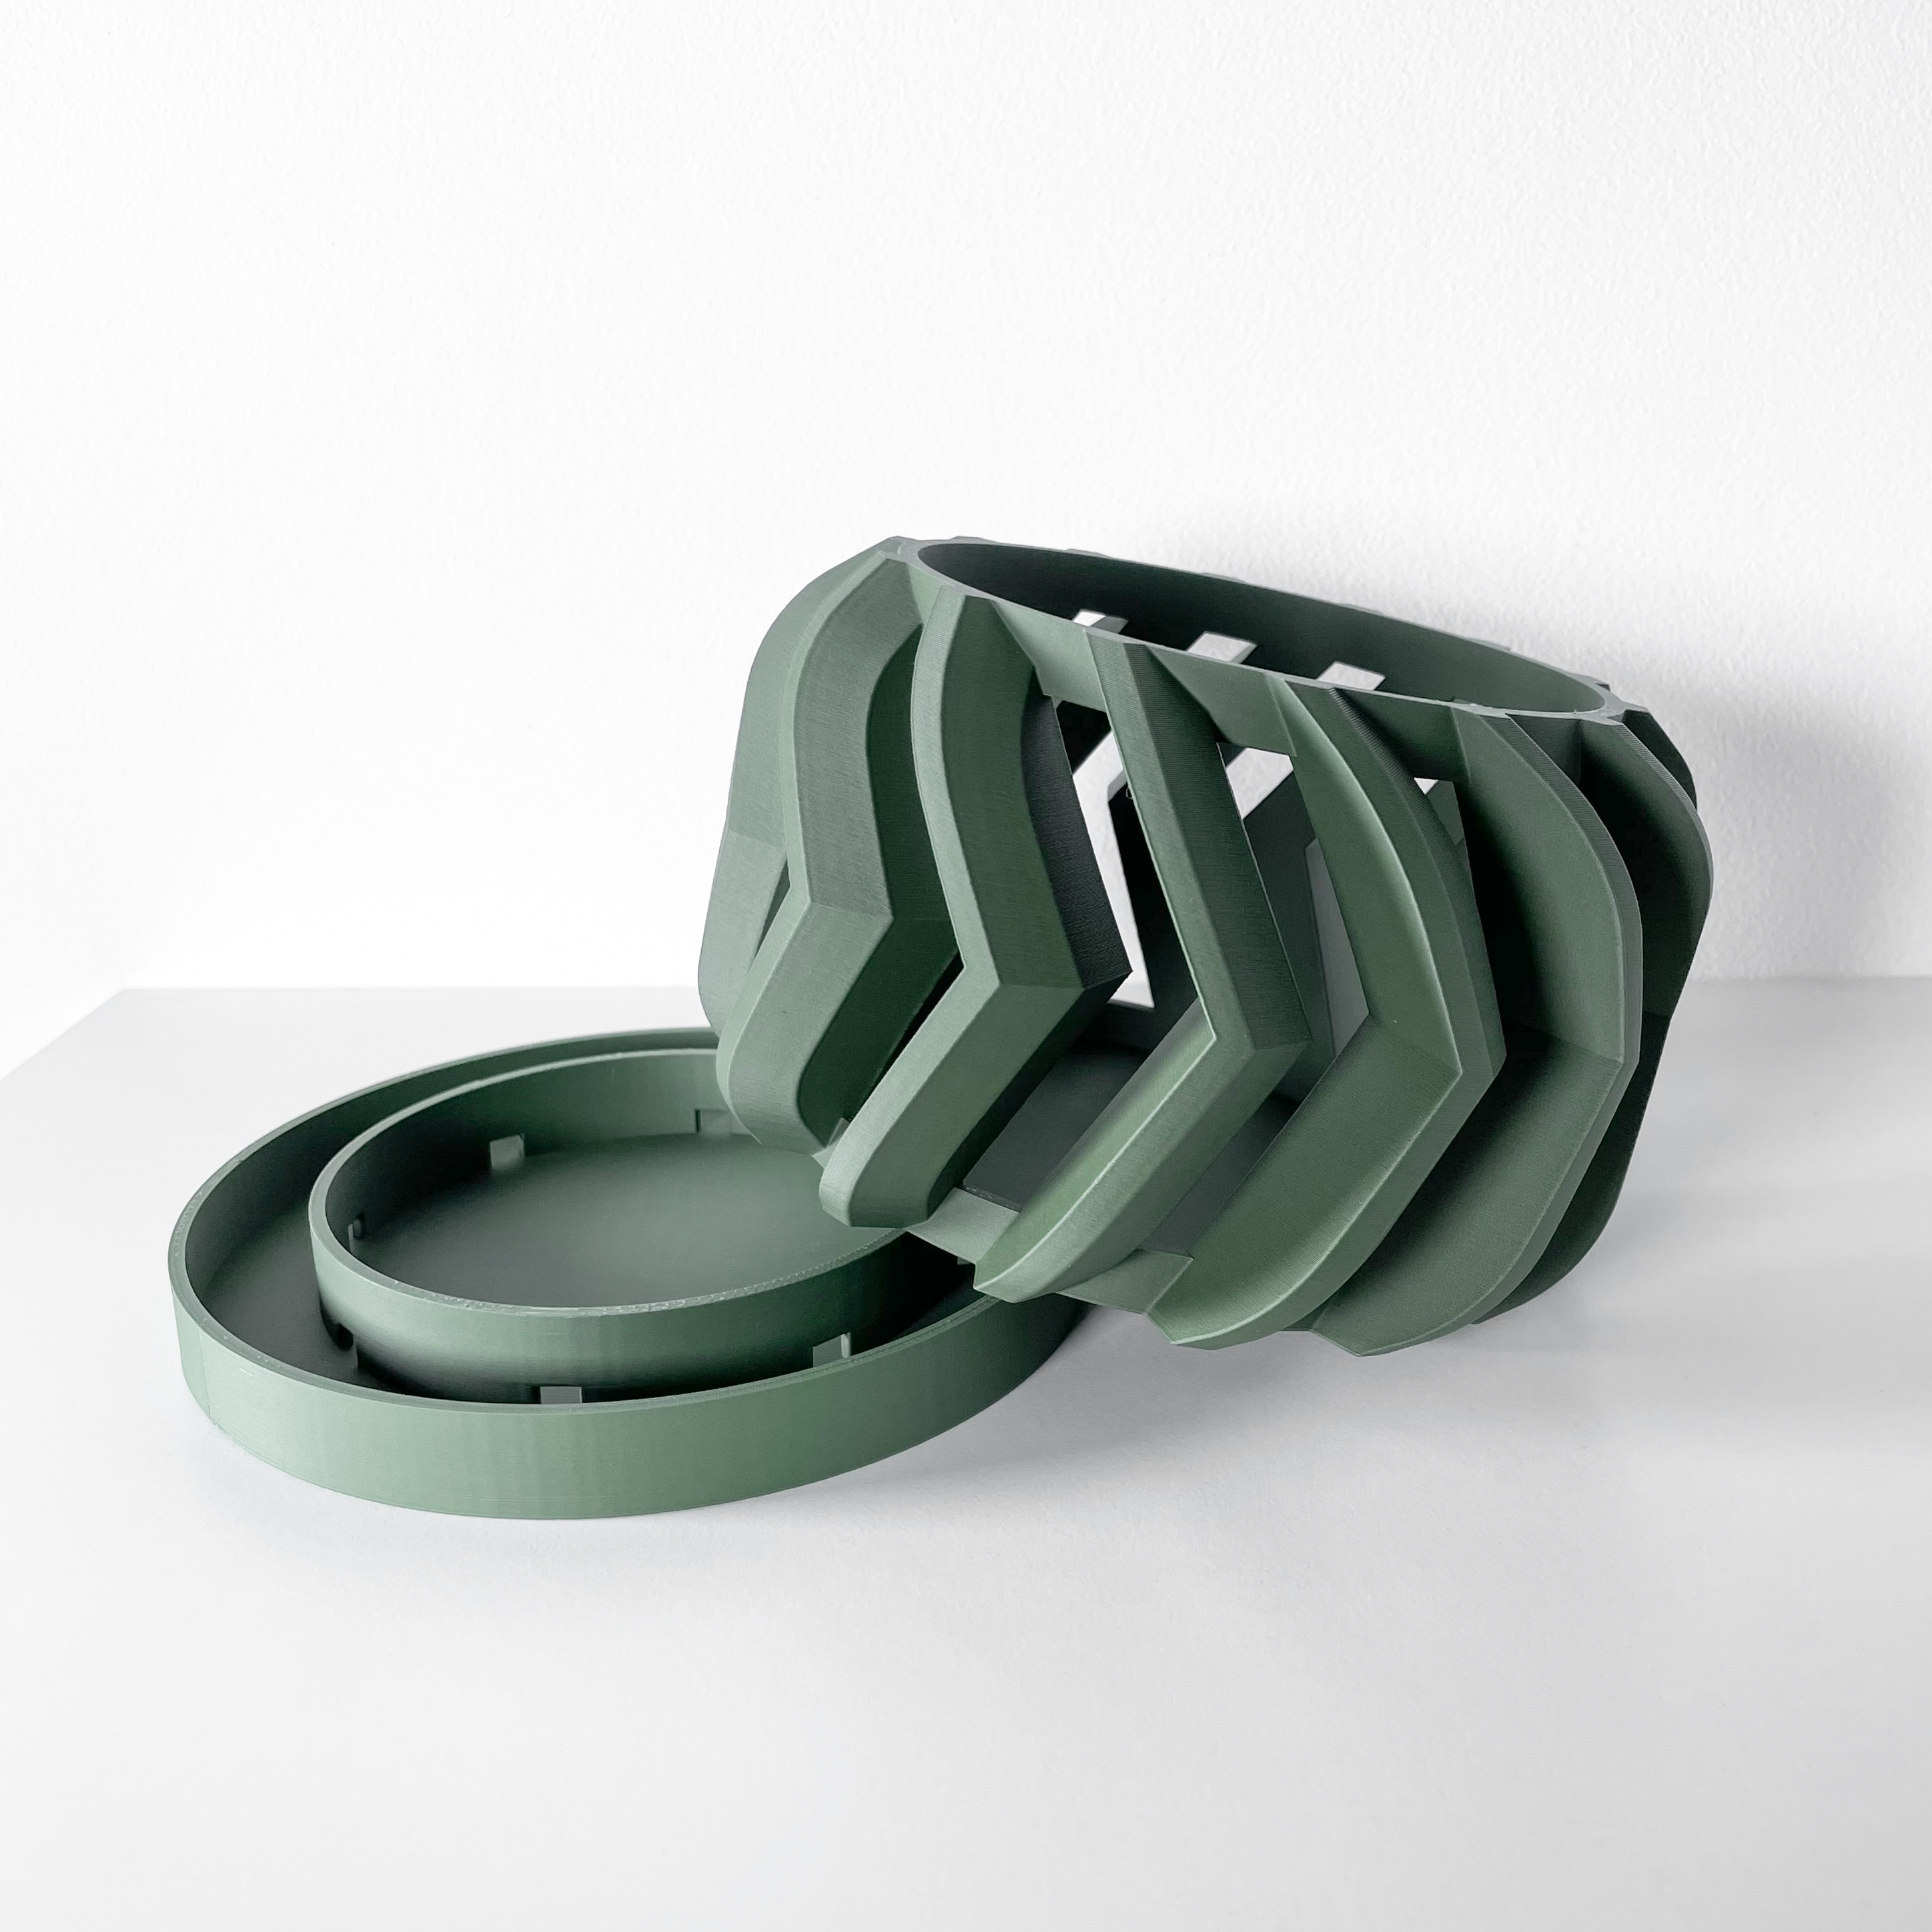 STL file NORDIC planter 🪴・3D printer design to download・Cults